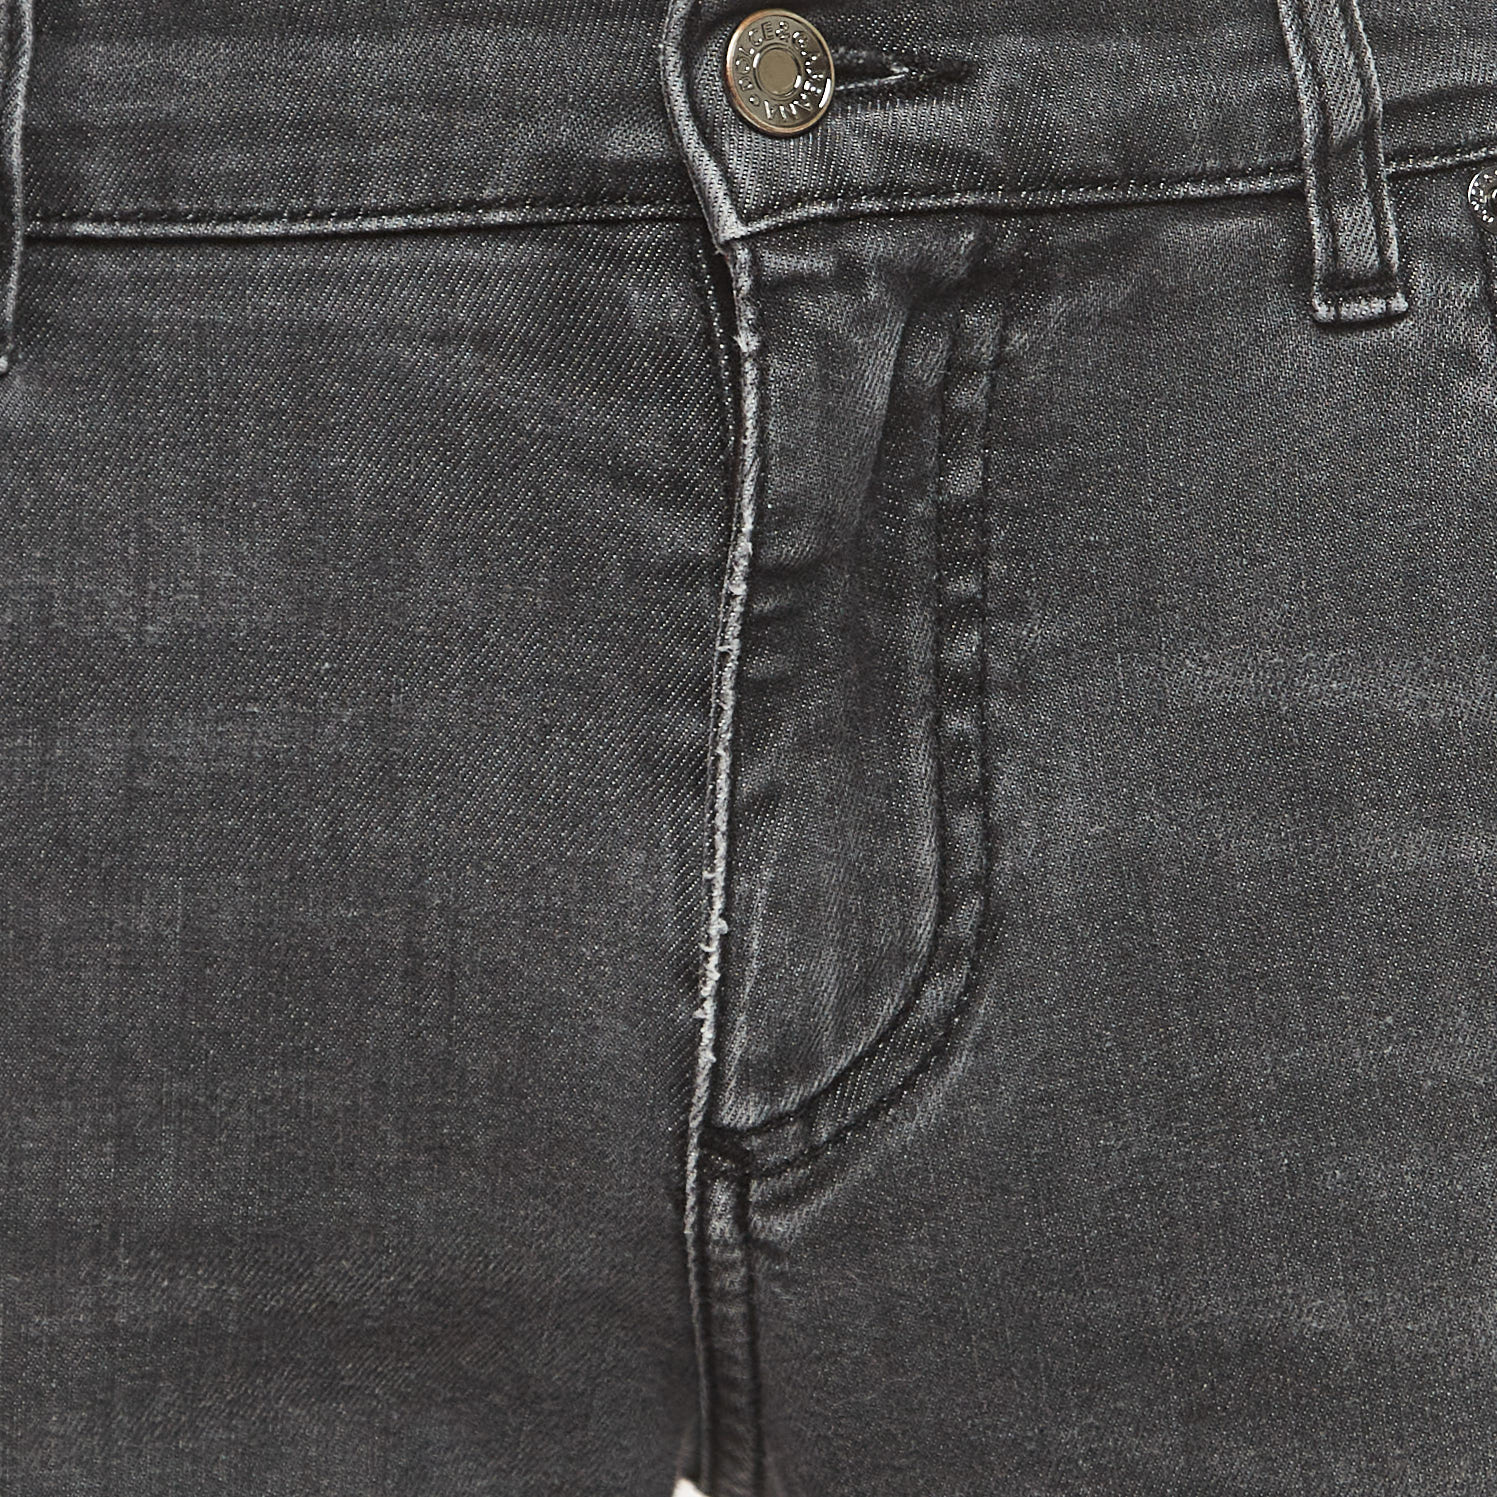 Dolce & Gabbana Grey Washed Denim Skinny Jeans L Waist 34